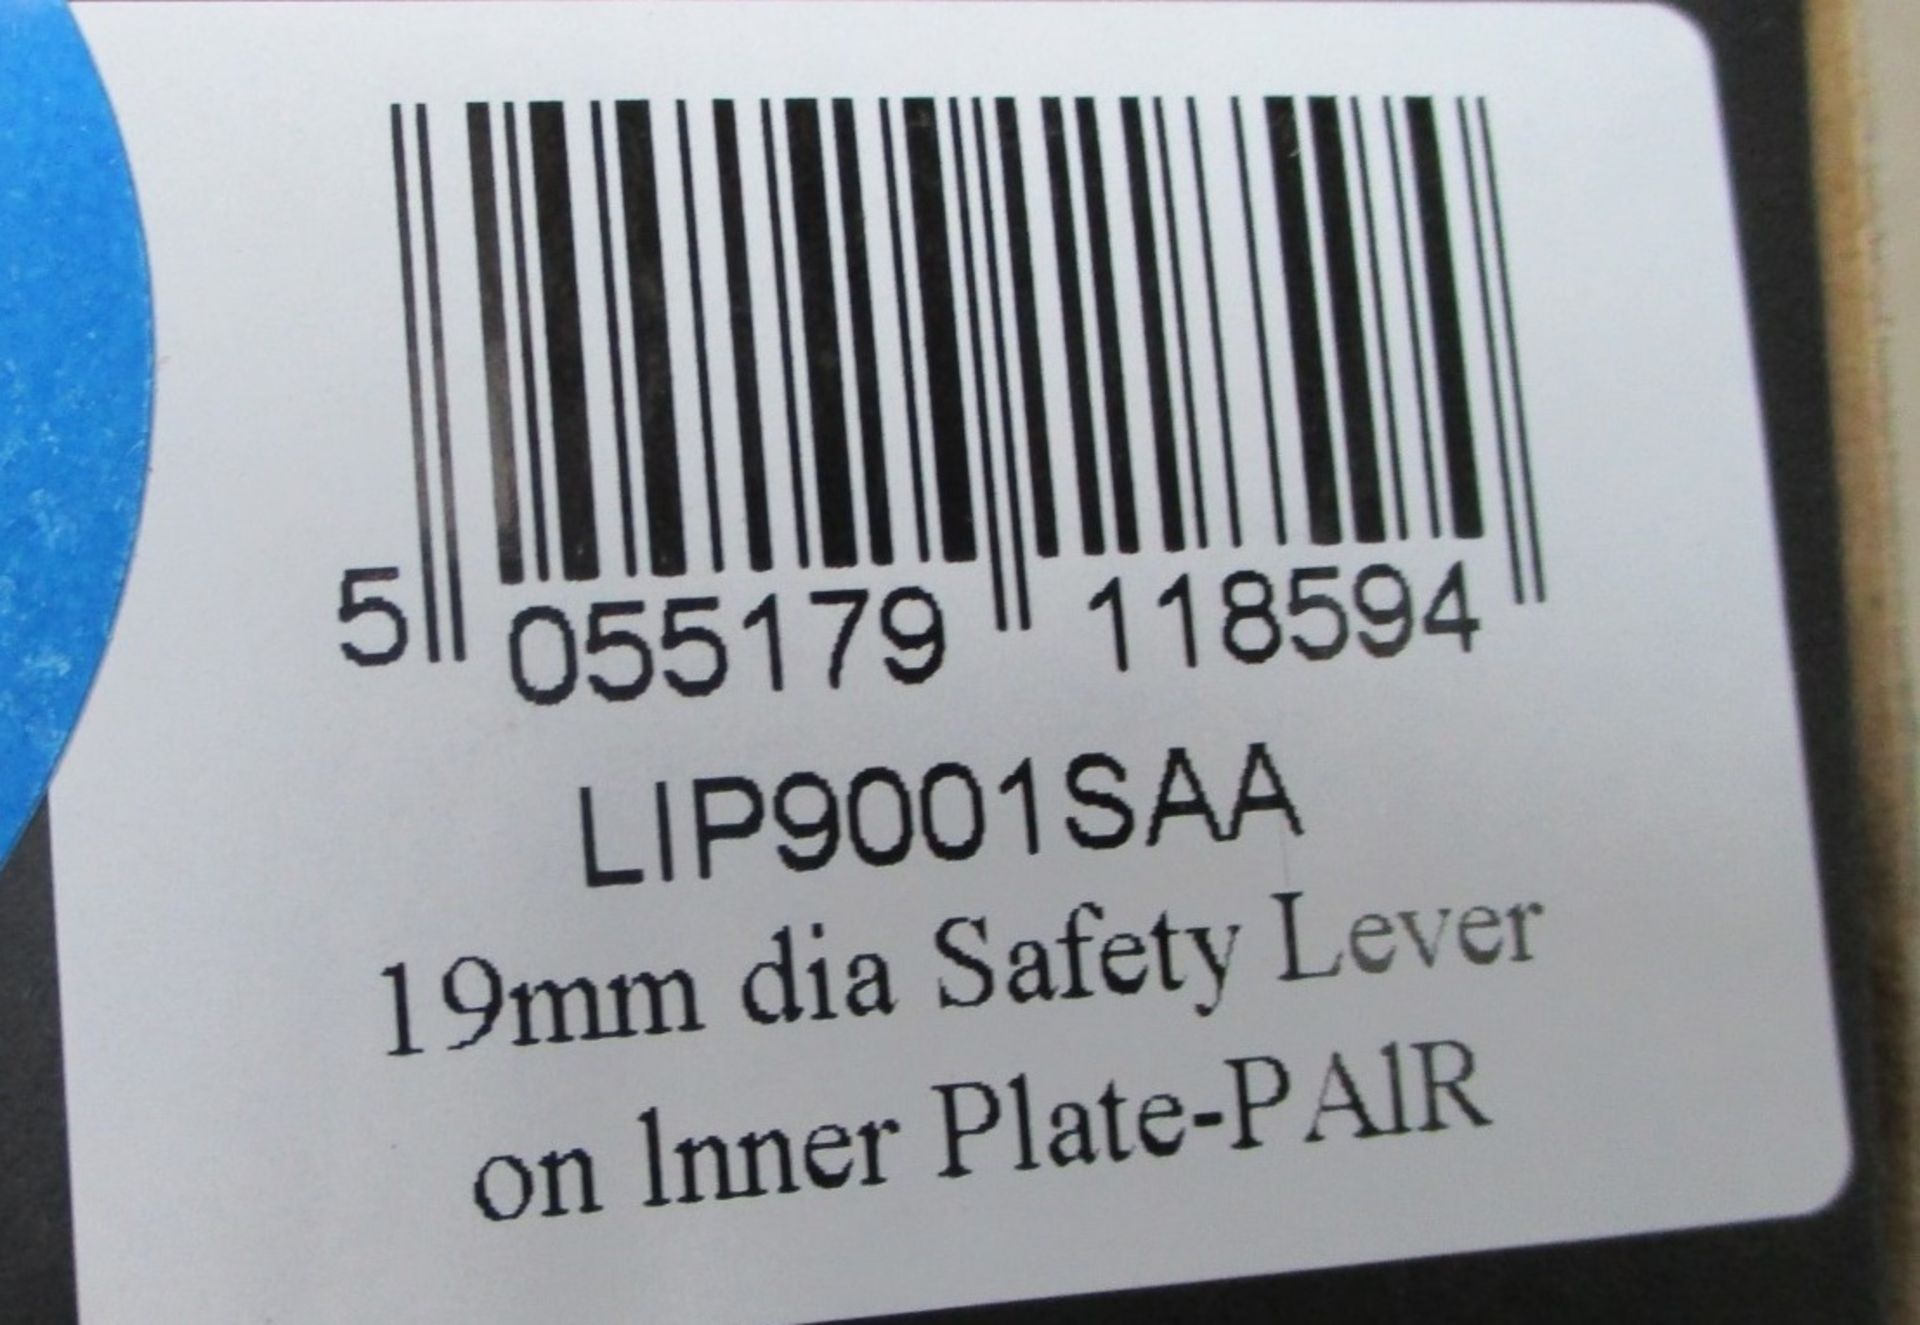 12 x Eurospec Safety Door Handles Plate Handles - Brand New Stock - Product Code: LIP9001SAA - CL538 - Image 3 of 5